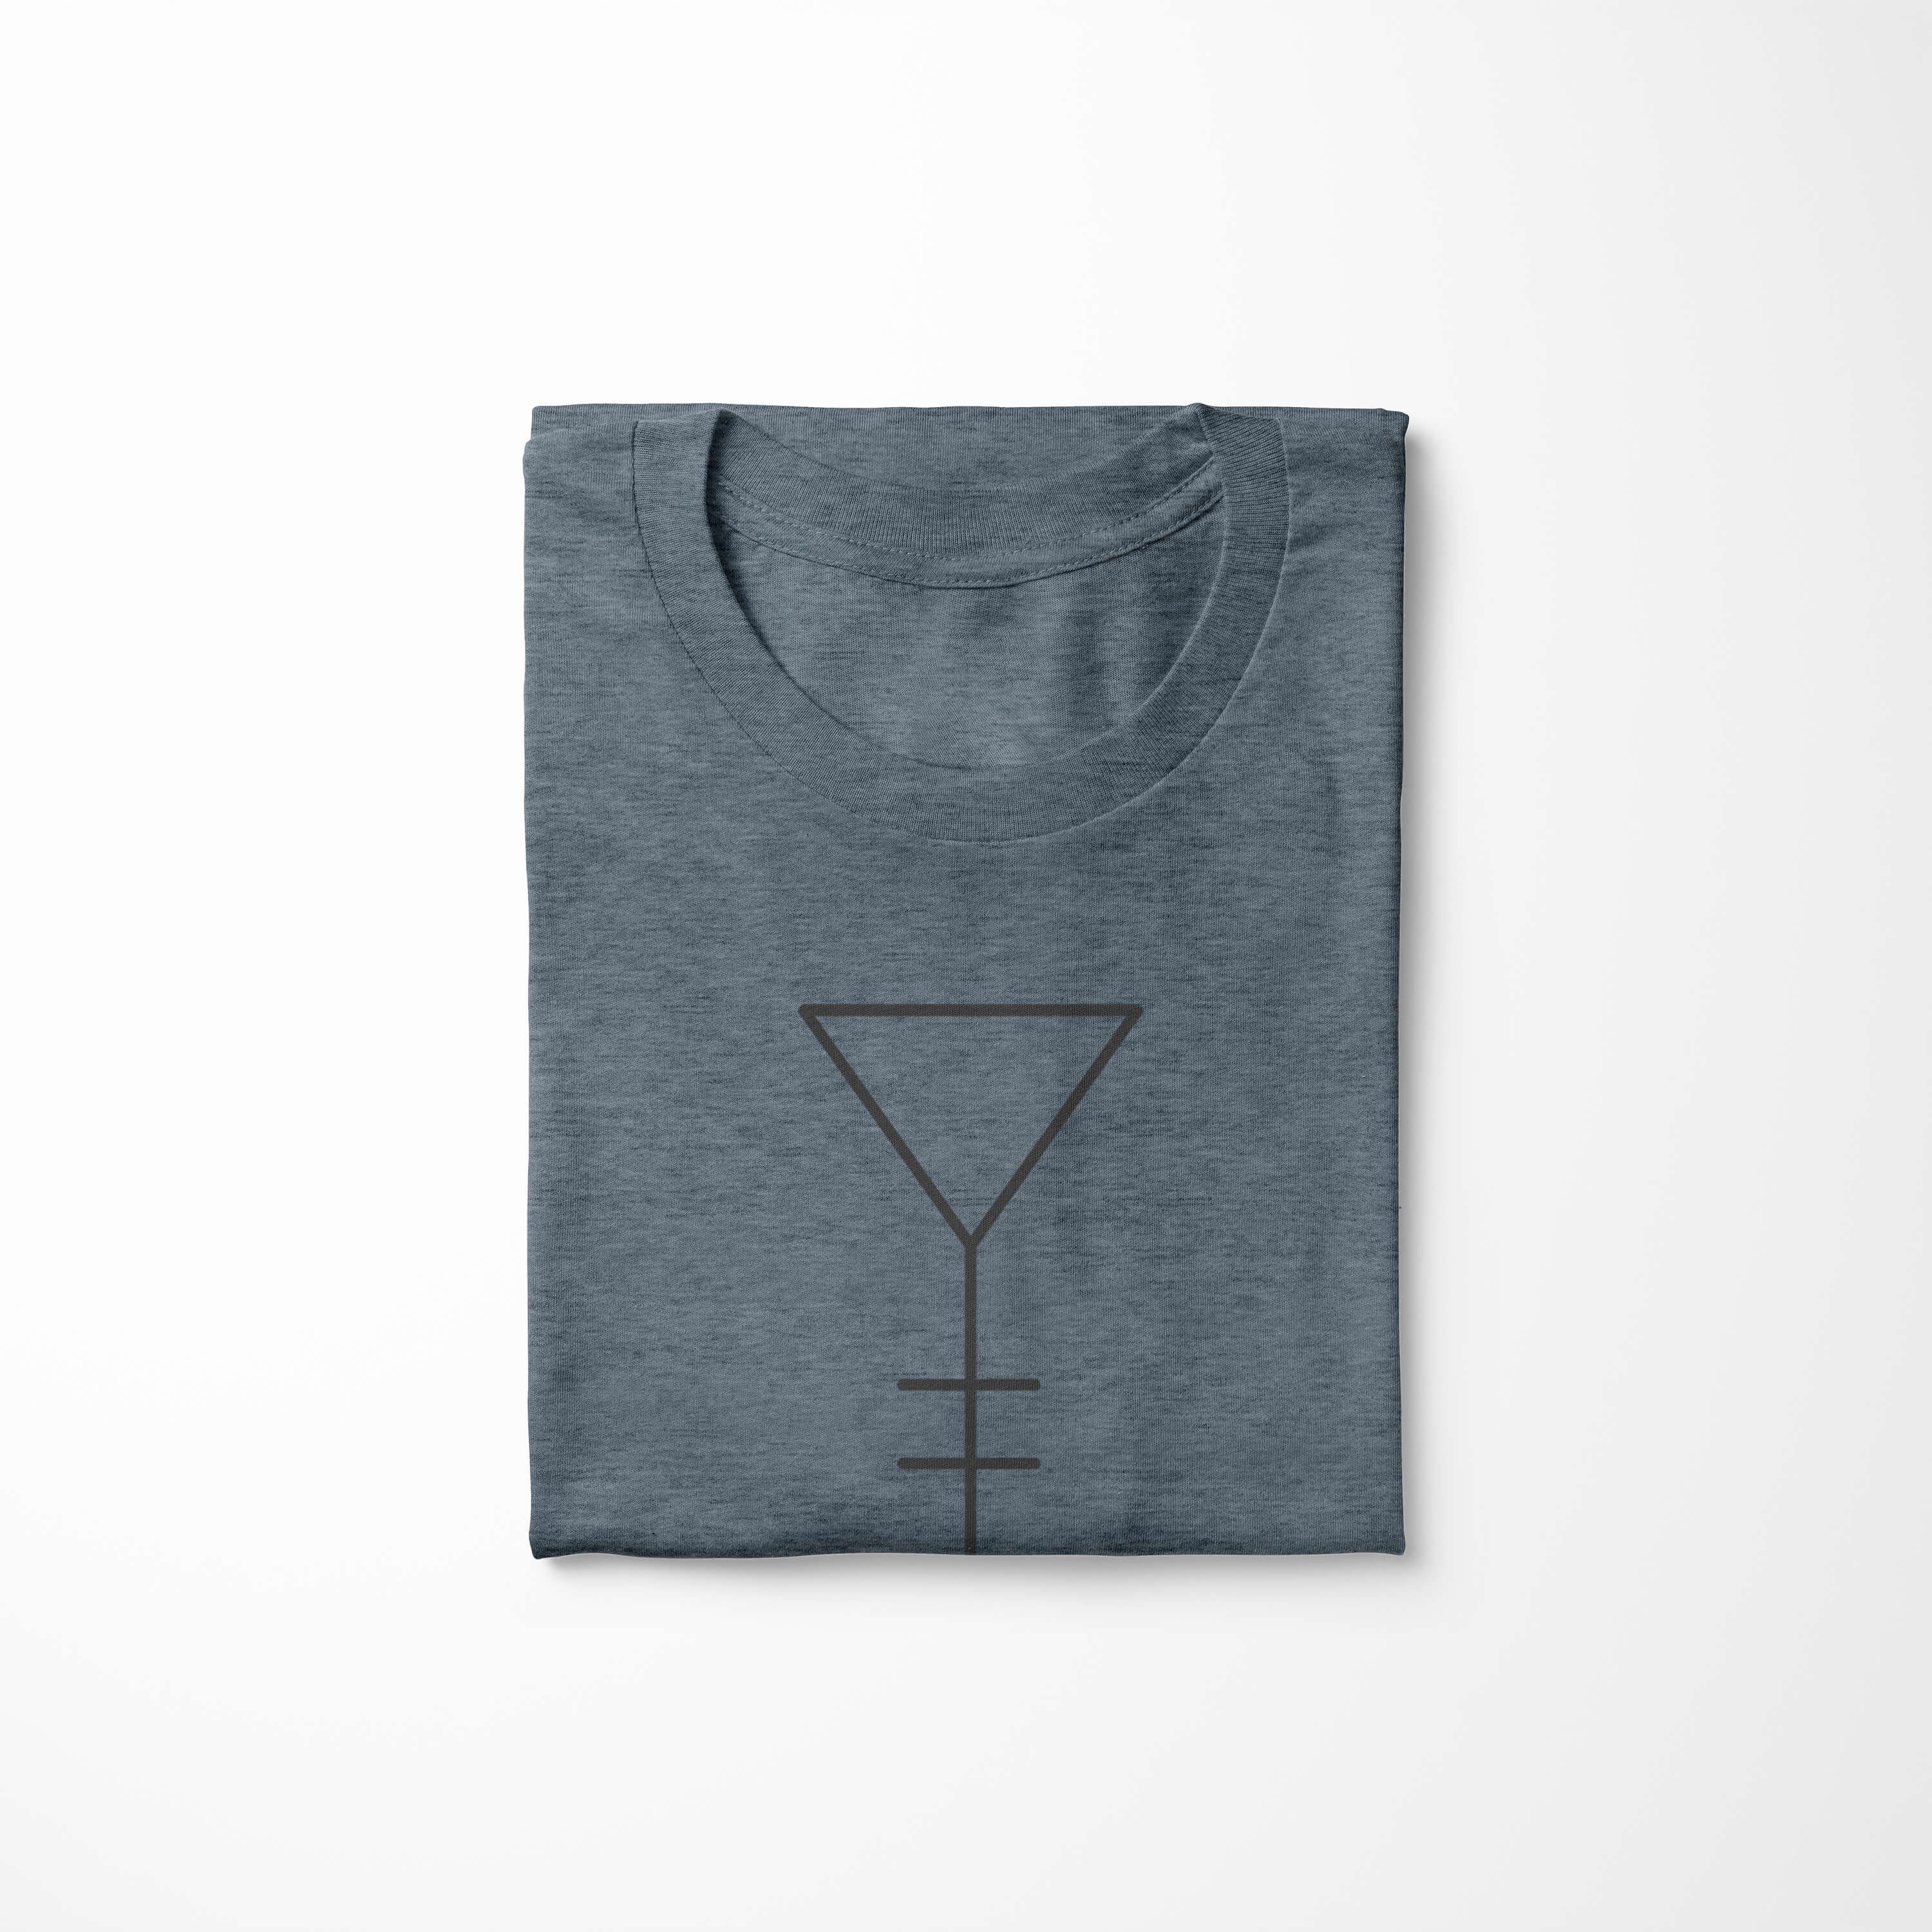 Symbole Struktur Serie Art T-Shirt Premium Sinus Alchemy Tragekomfort Indigo T-Shirt feine angenehmer No.0024